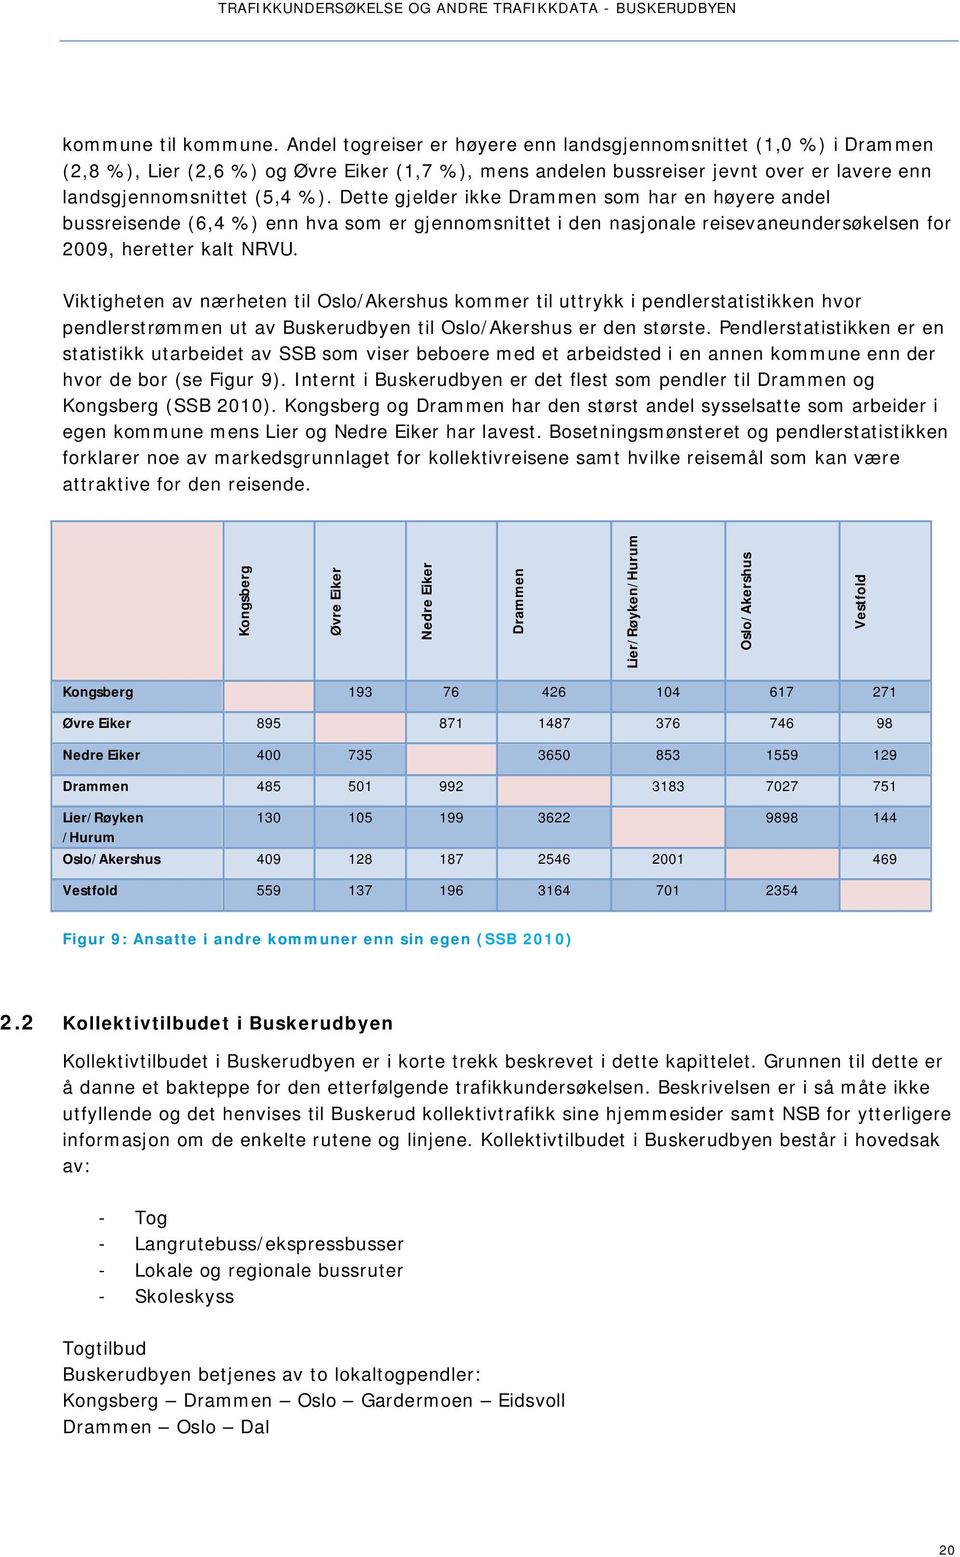 Dette gjelder ikke Drammen som har en høyere andel bussreisende (6,4 %) enn hva som er gjennomsnittet i den nasjonale reisevaneundersøkelsen for 2009, heretter kalt NRVU.